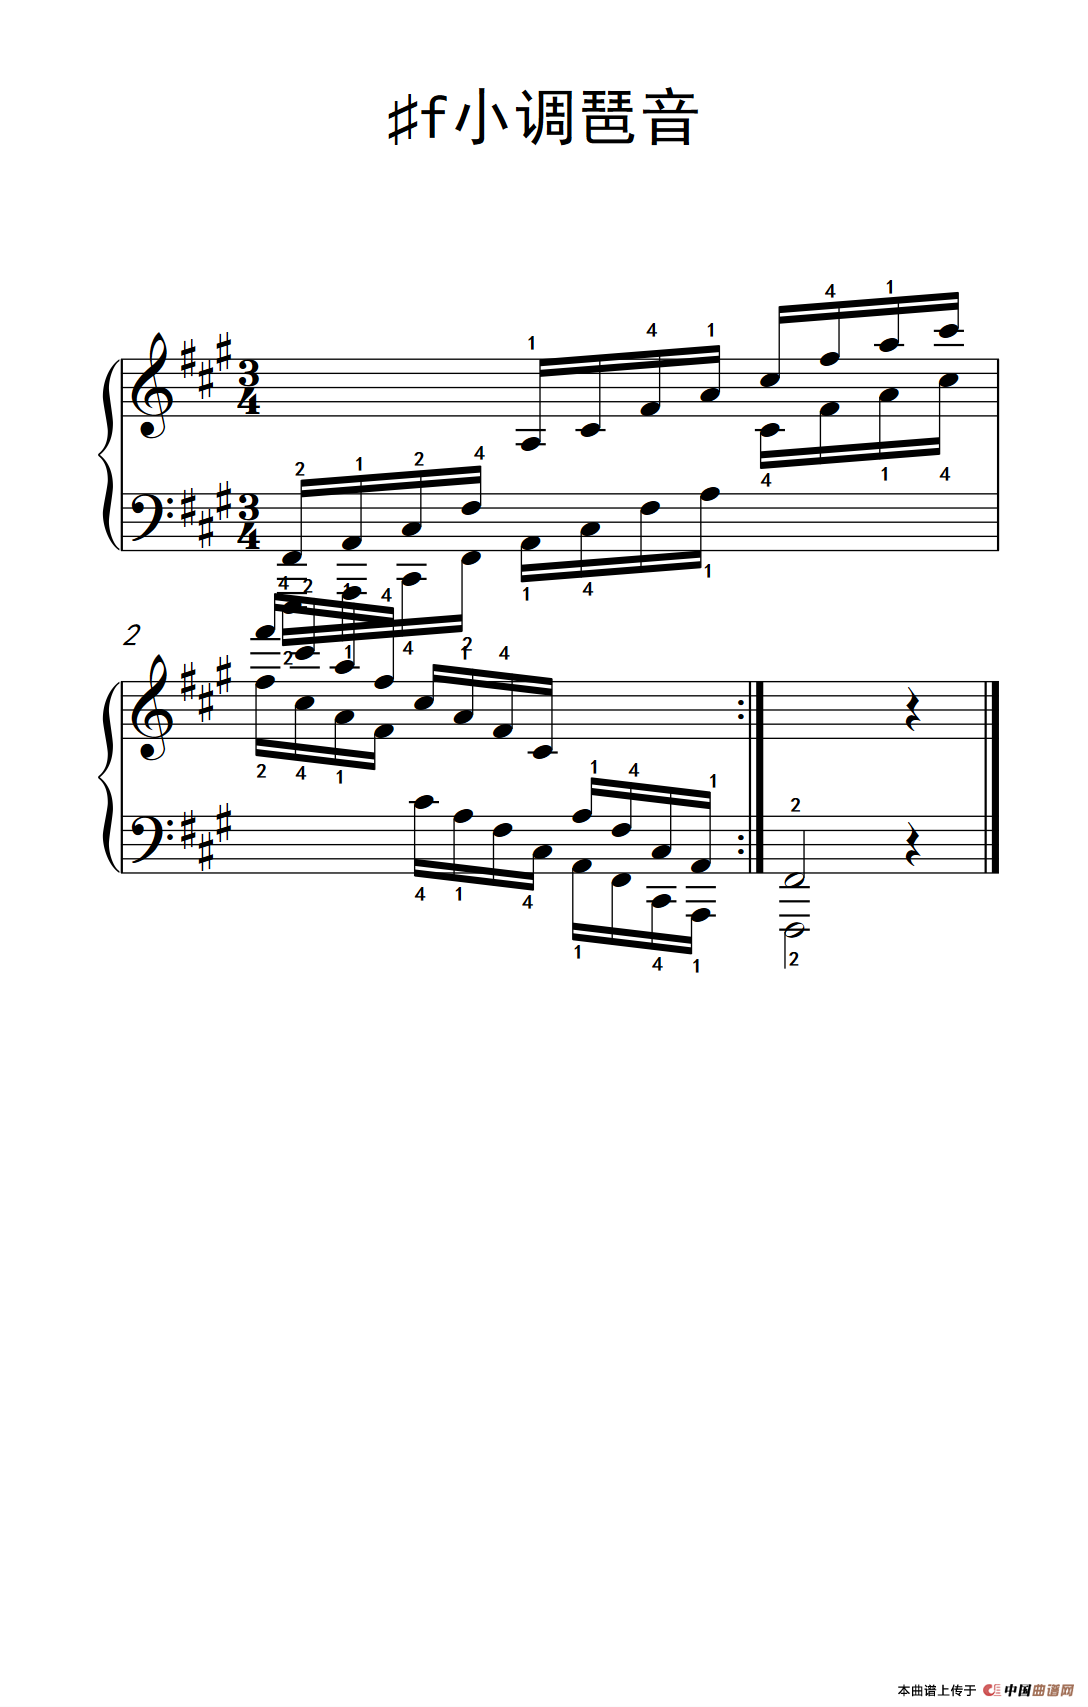 第四级1473f小调琶音中央音乐学院钢琴业余考级教程46级